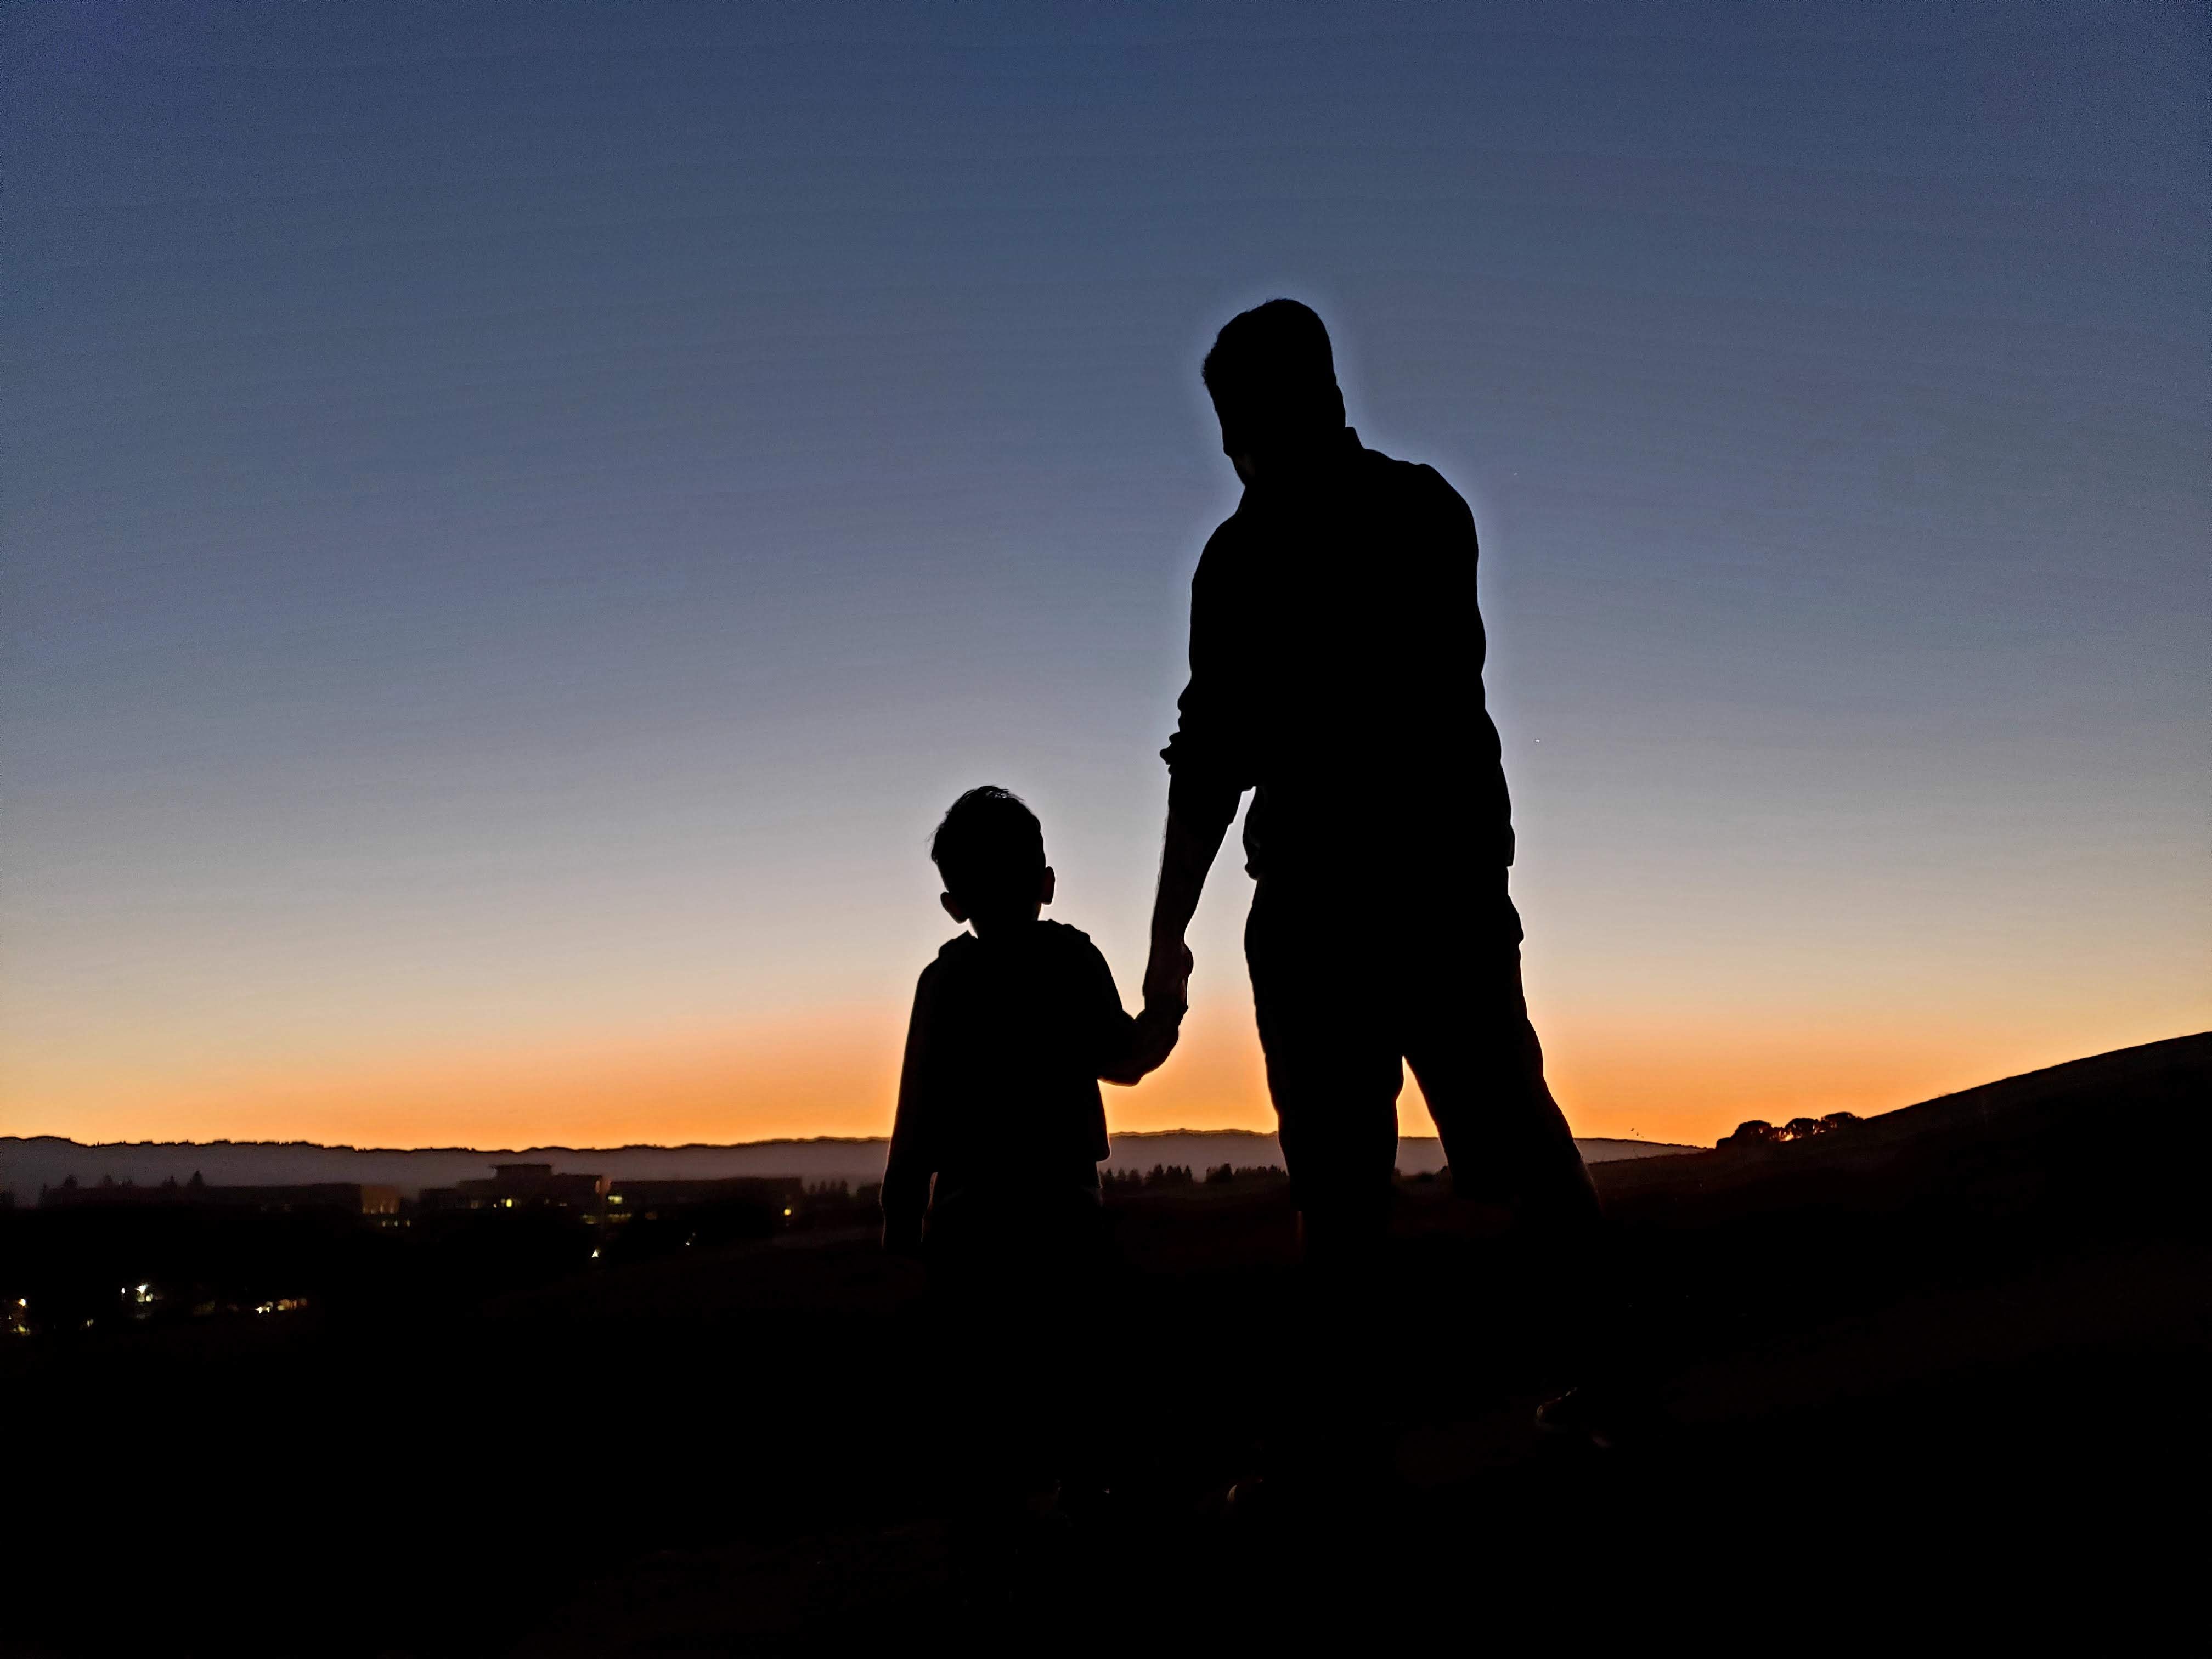 Ein Vater mit Depressionen erzählt, wie sich das anfühlt. Man sieht die Silhouetten einer erwachsenen Person, die ein Kind an einer Hand hält. Sie stehen vor einem Sonnenuntergang.